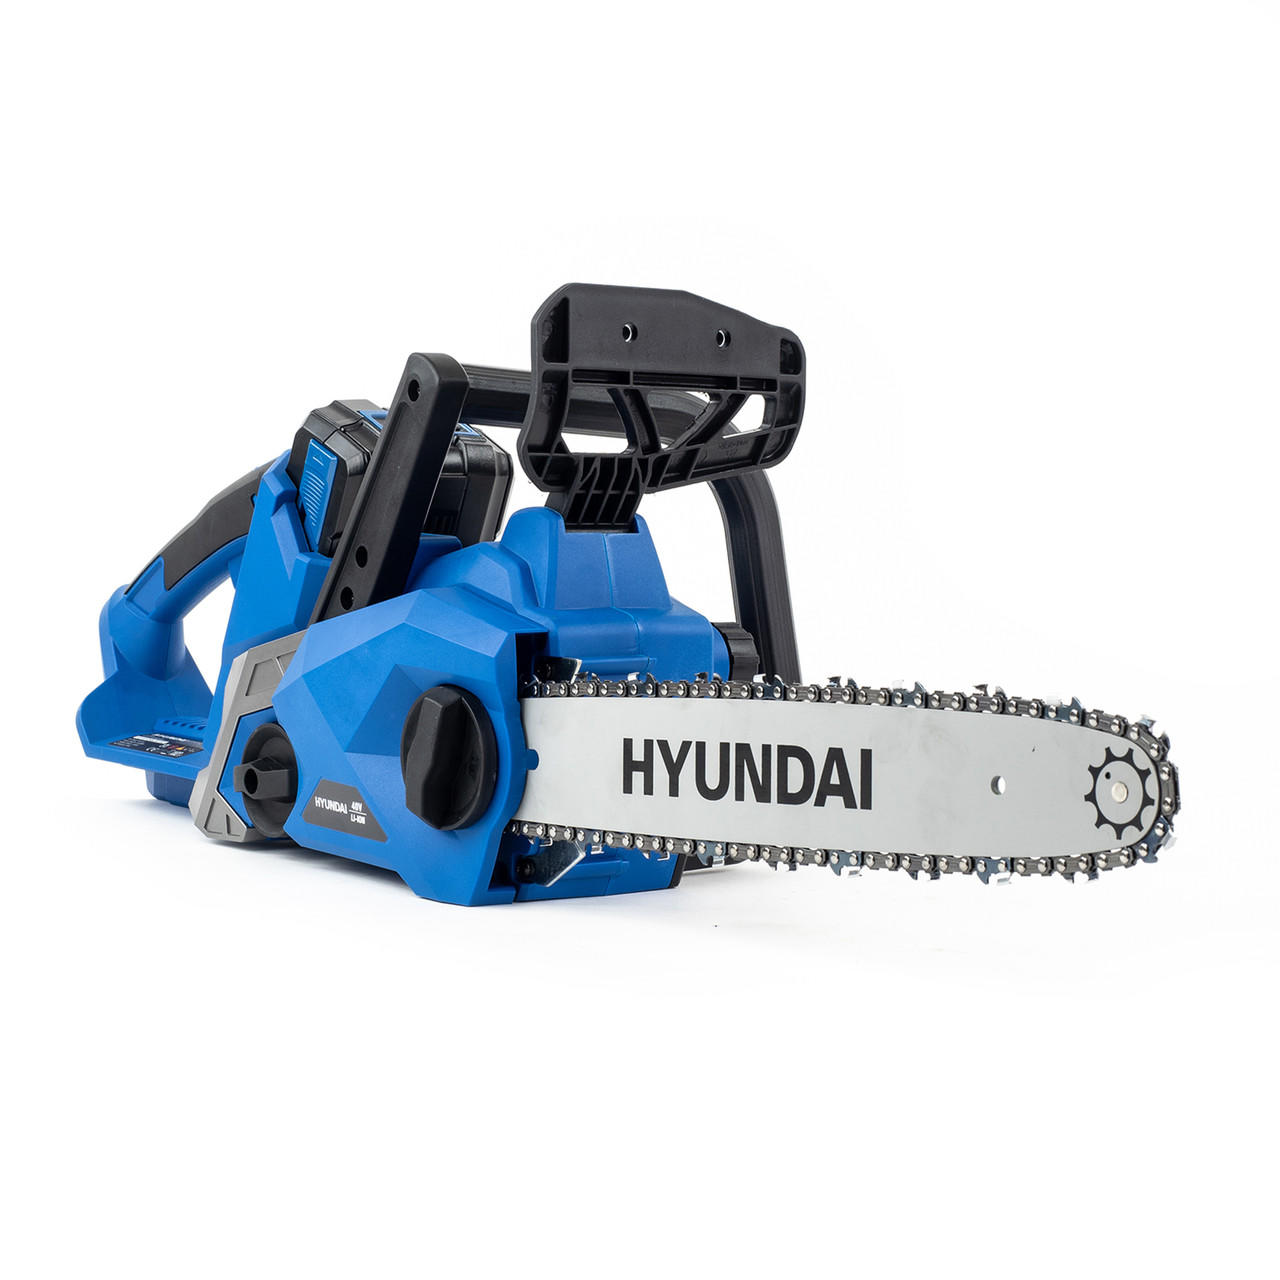 Hyundai HYC40LI 14" 40V Cordless Chainsaw Kit